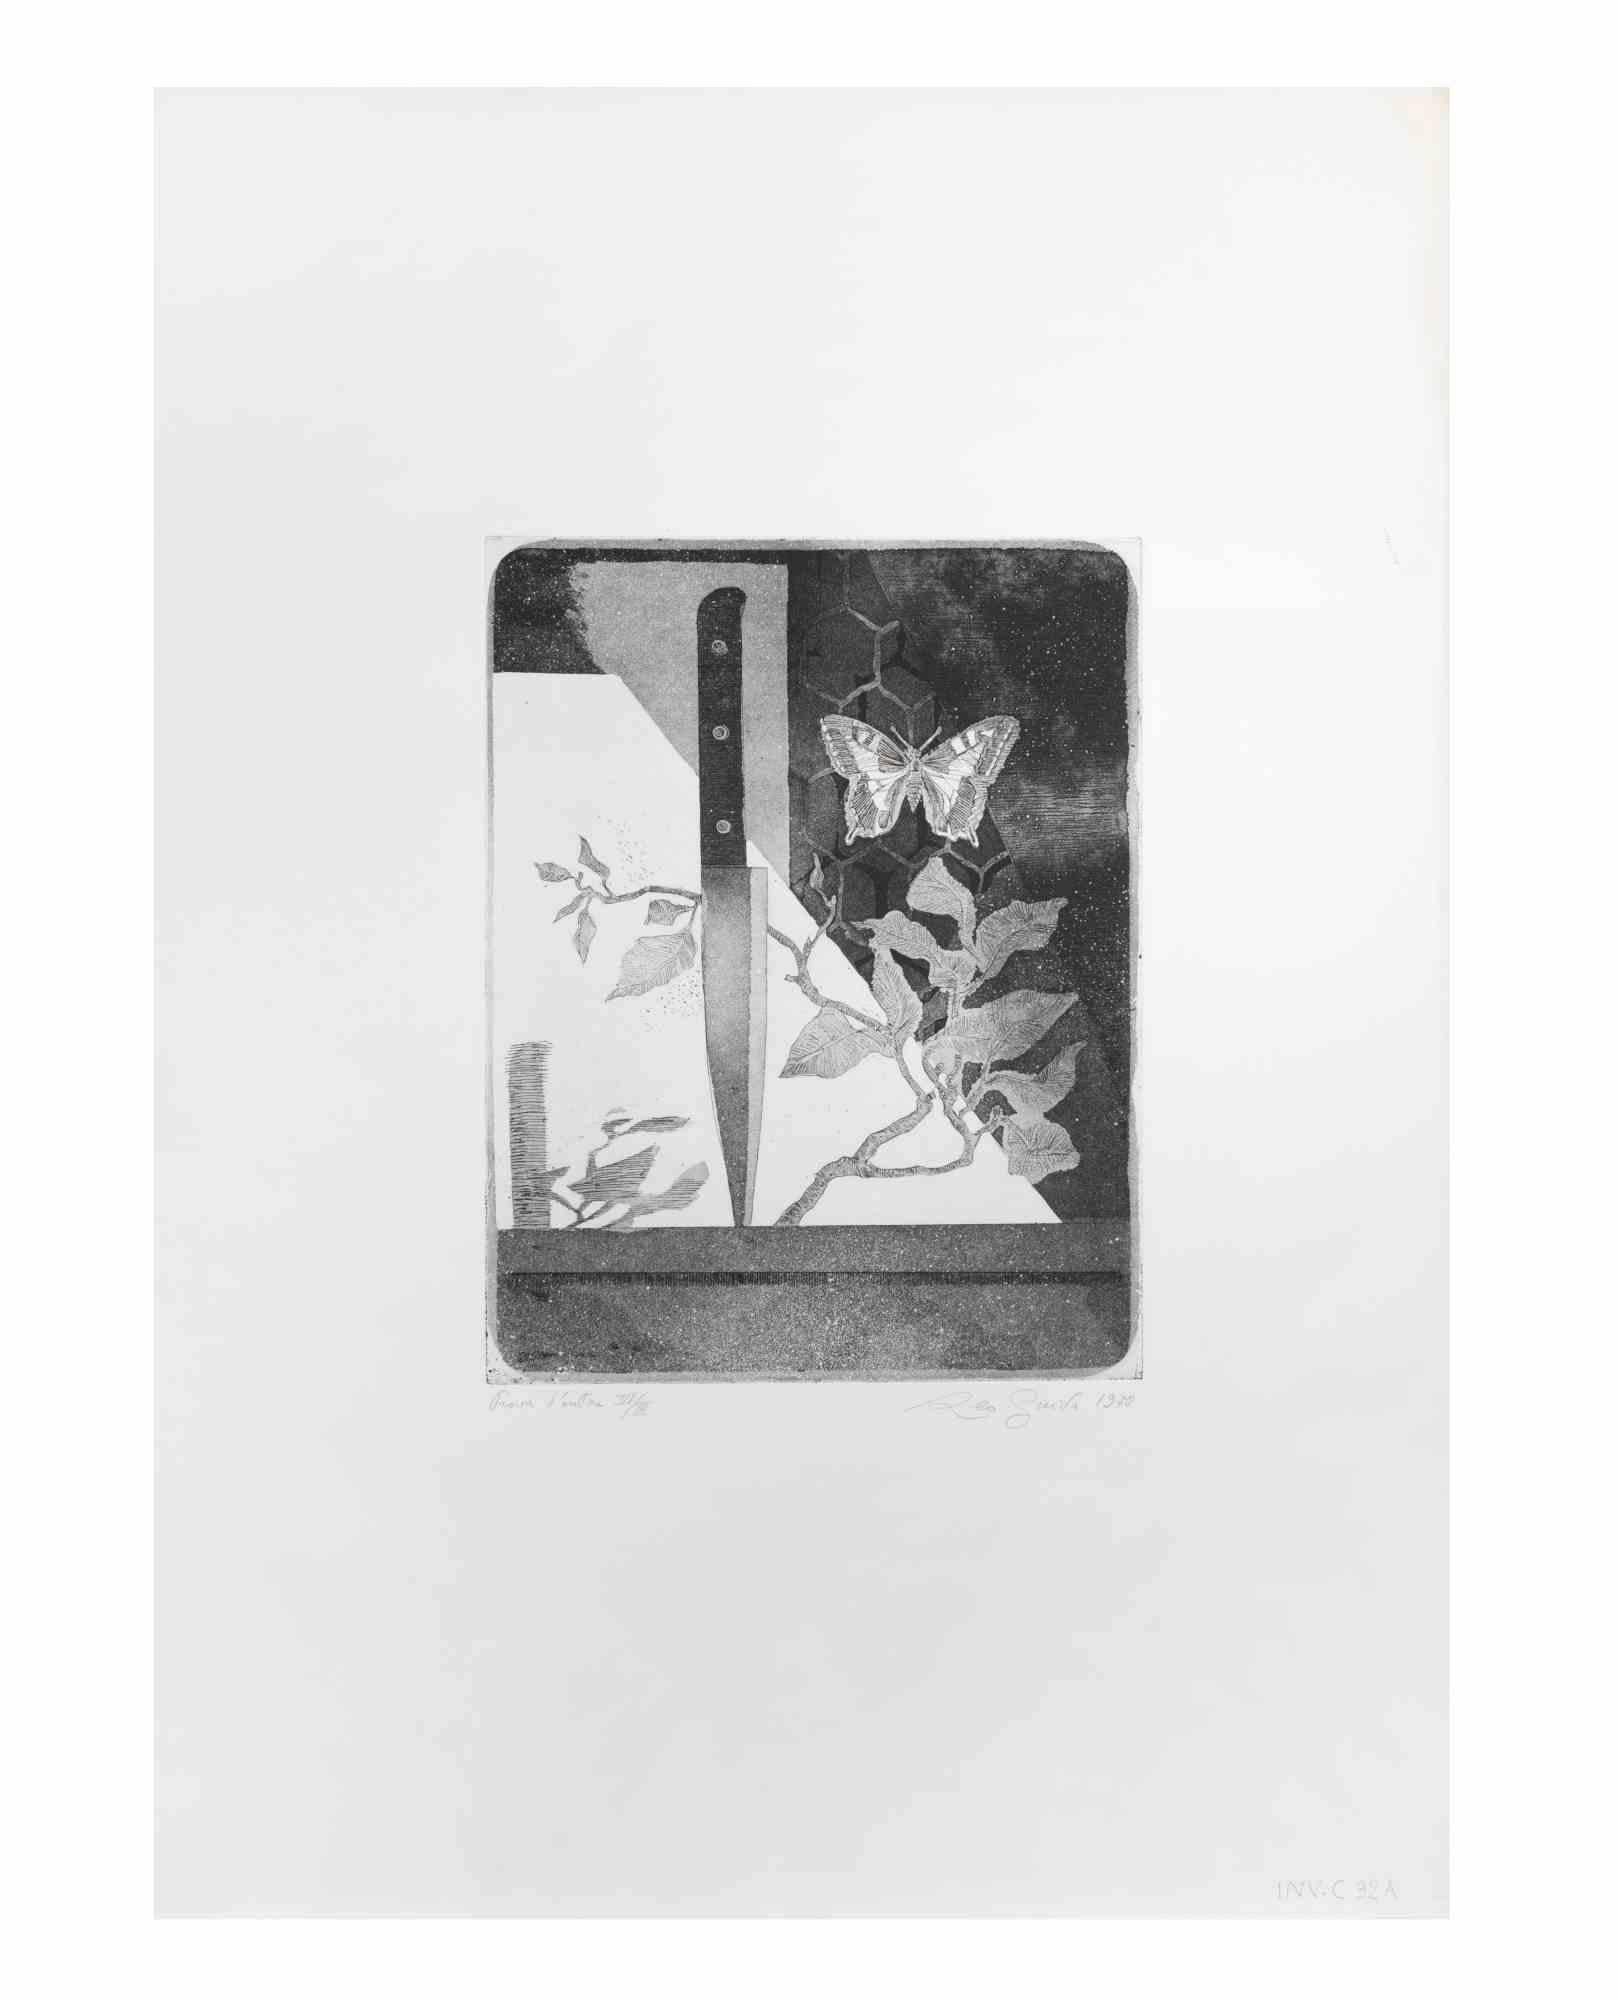 Das Messer und der Schmetterling ist eine Radierung von Leo Guida aus den 1970er Jahren.

Rechts unten handschriftlich signiert und datiert, links unten der Abzug des Künstlers.

Guter Zustand mit leichten Stockflecken.

 

Leo Guida  (1992 - 2017).